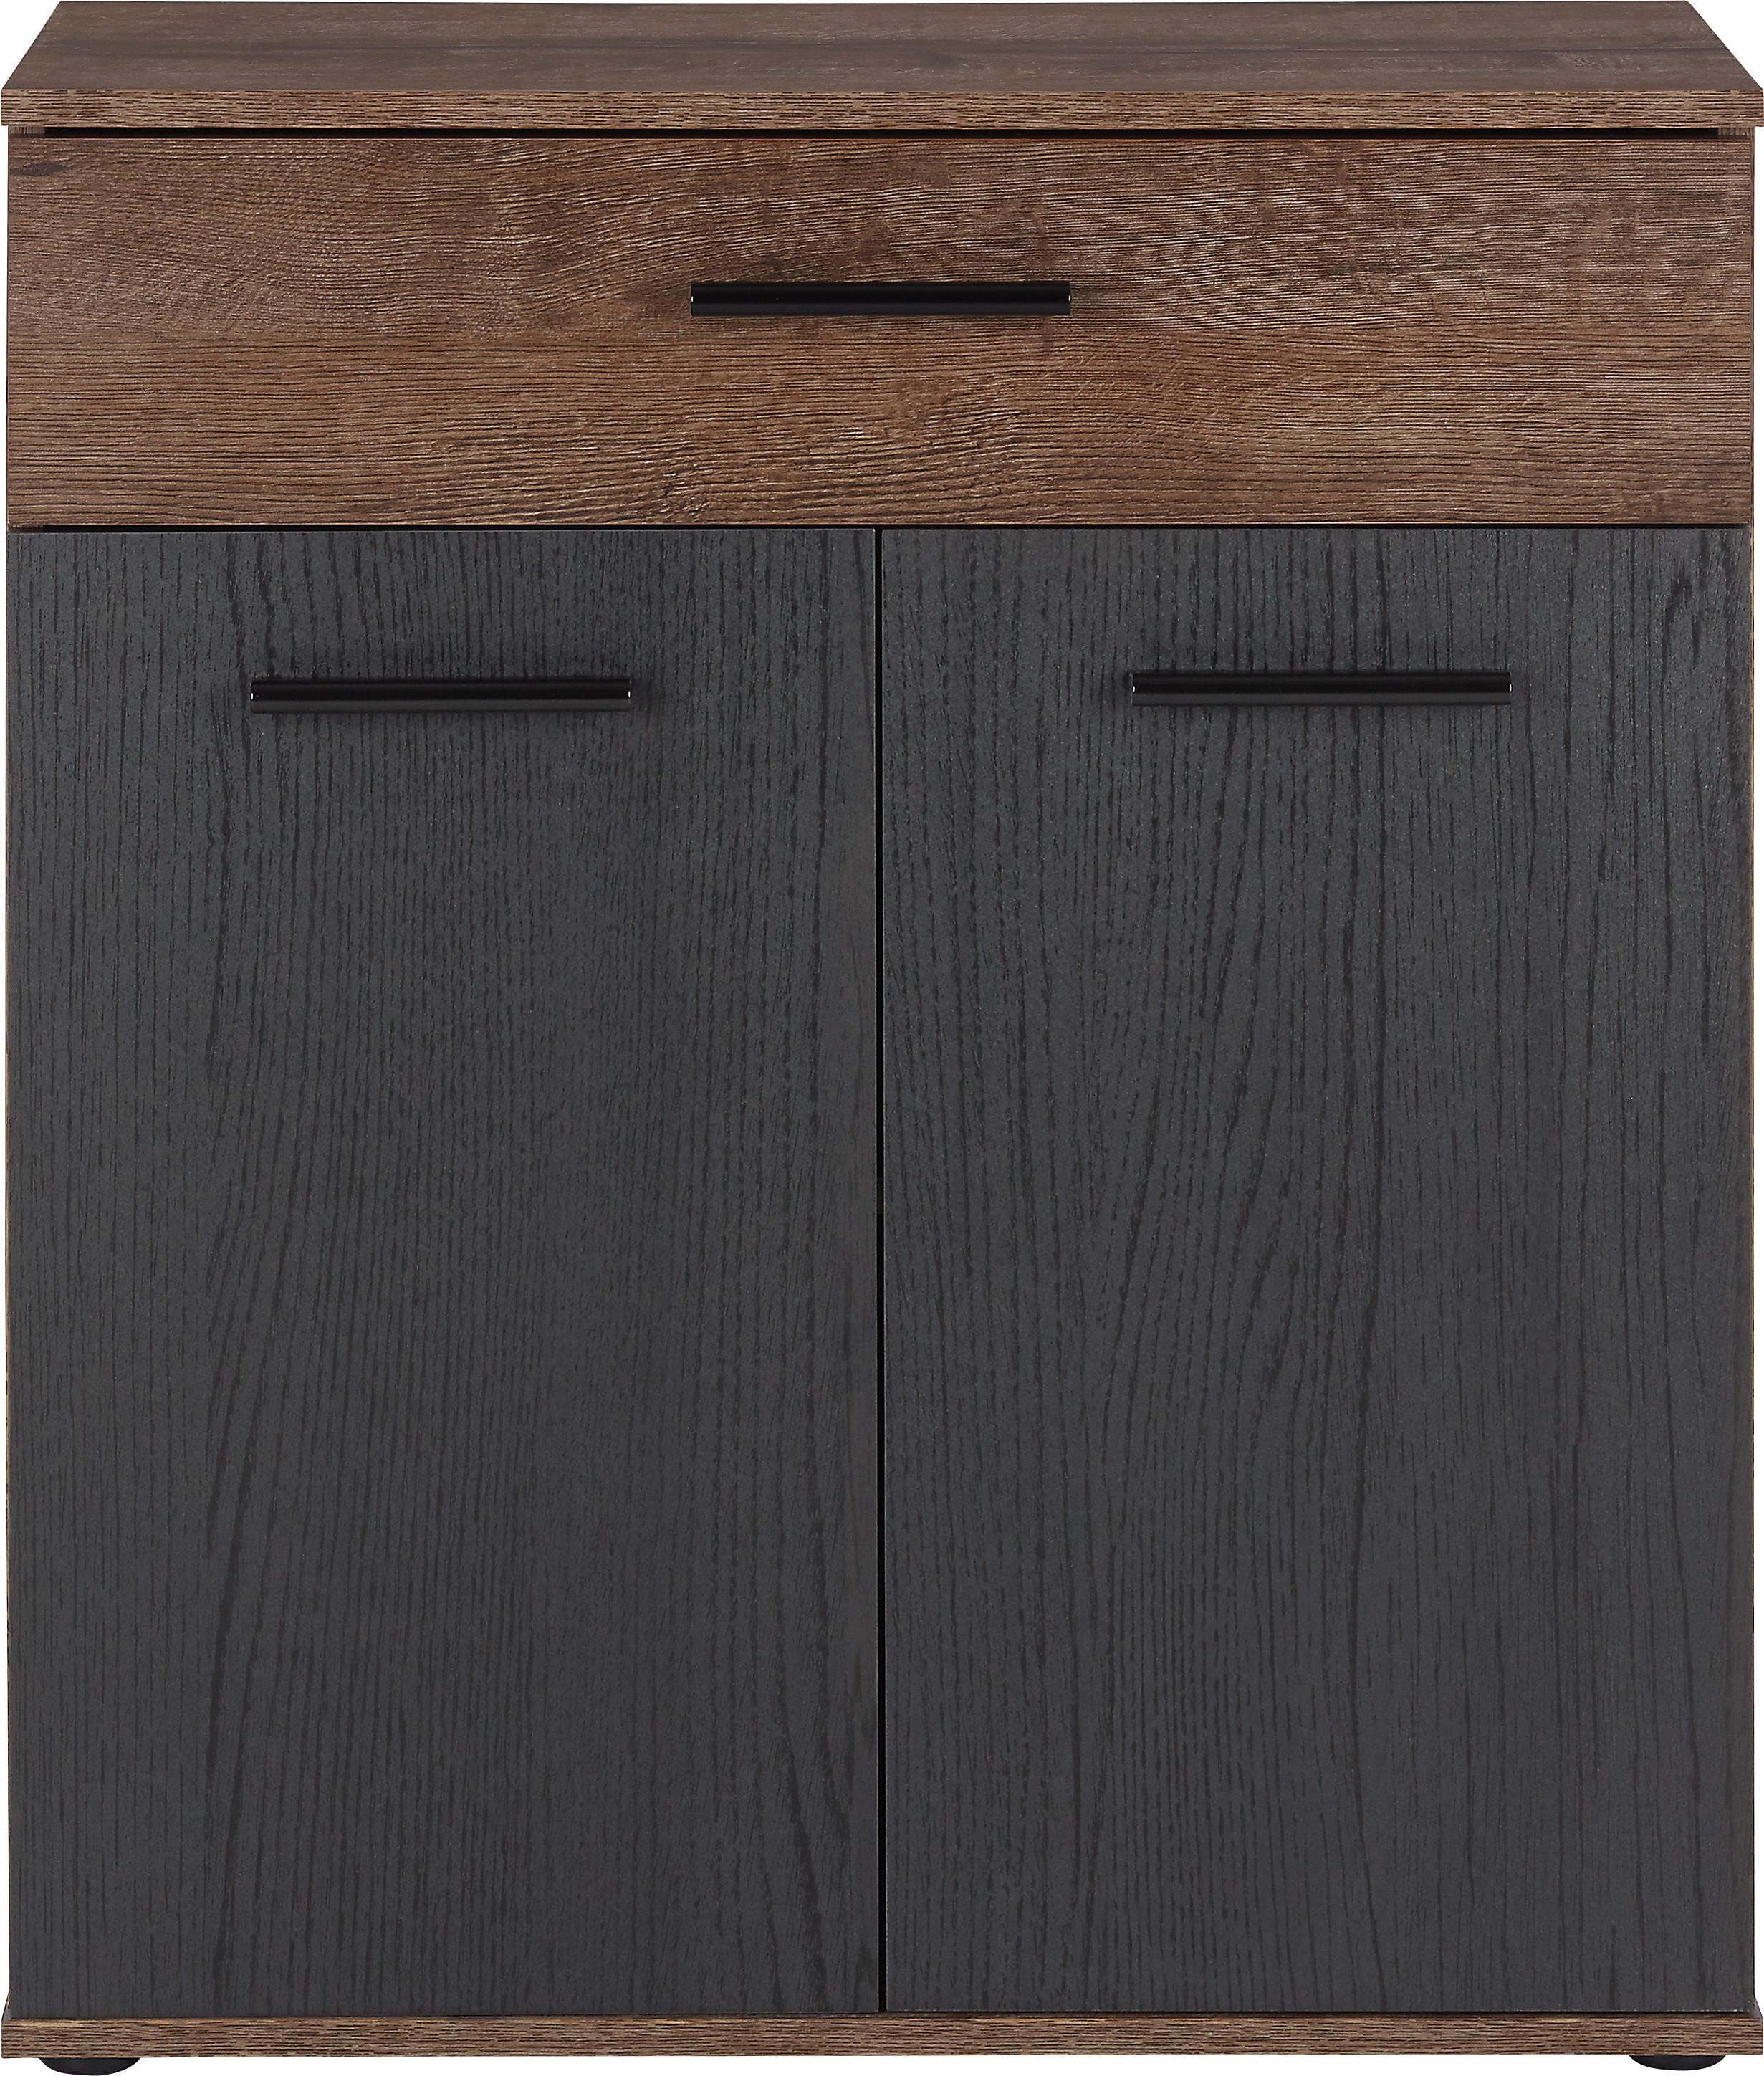 Comodă Tokio - nămol/culoare lemn stejar, Modern, plastic/metal (69,9/82,8/34,9cm) - Modern Living